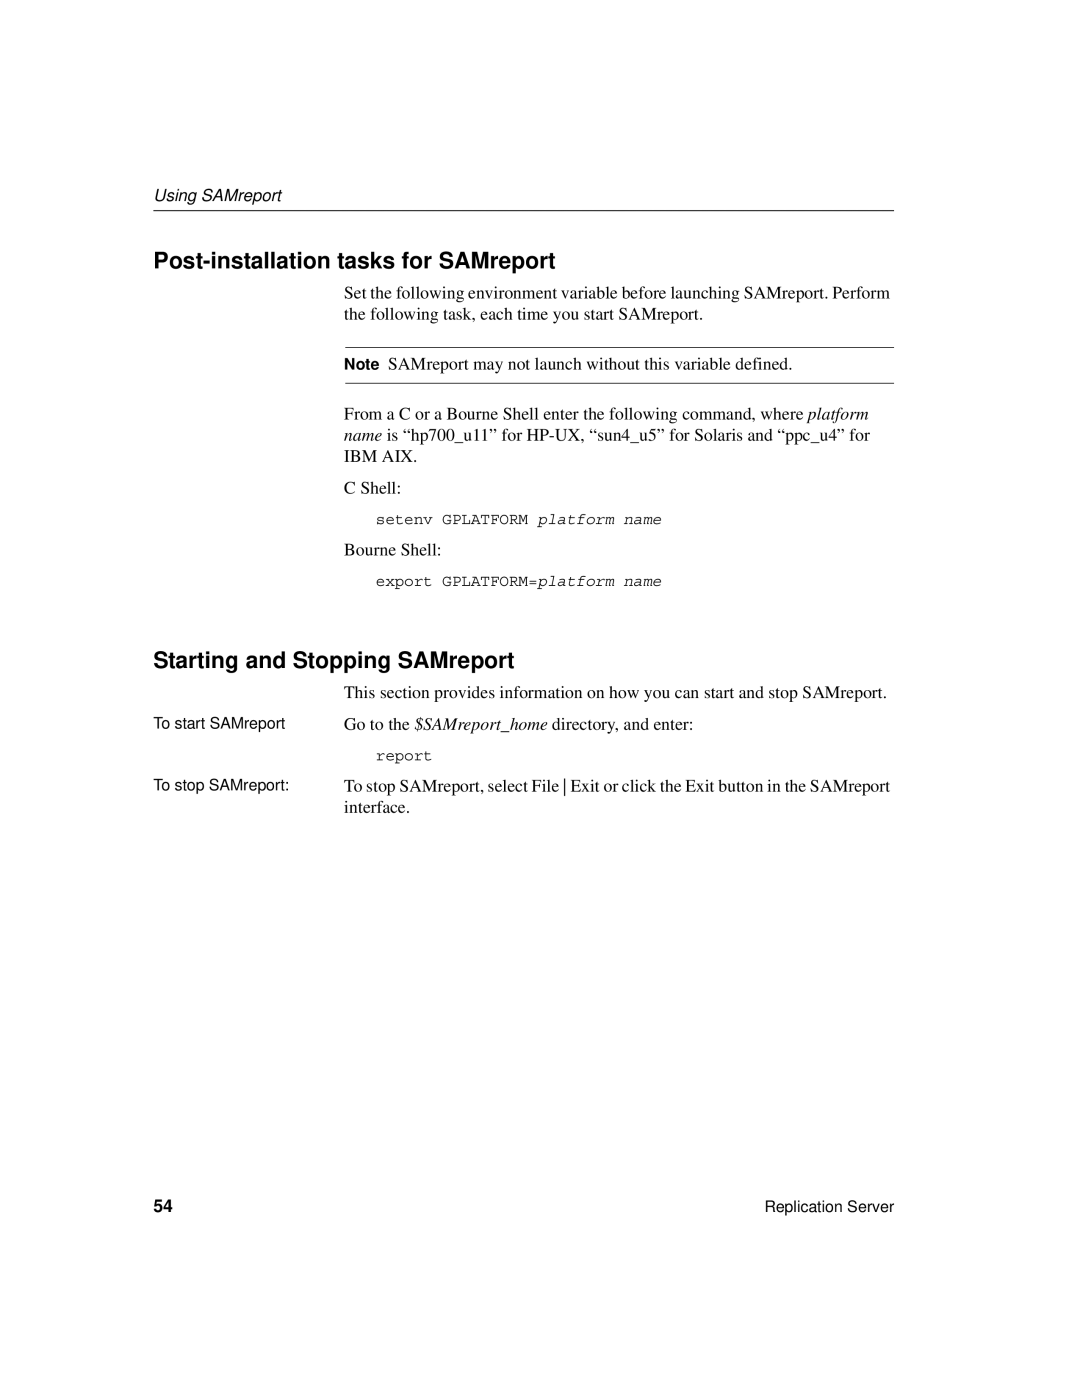 Sybase 15 manual Post-installation tasks for SAMreport, Starting and Stopping SAMreport 